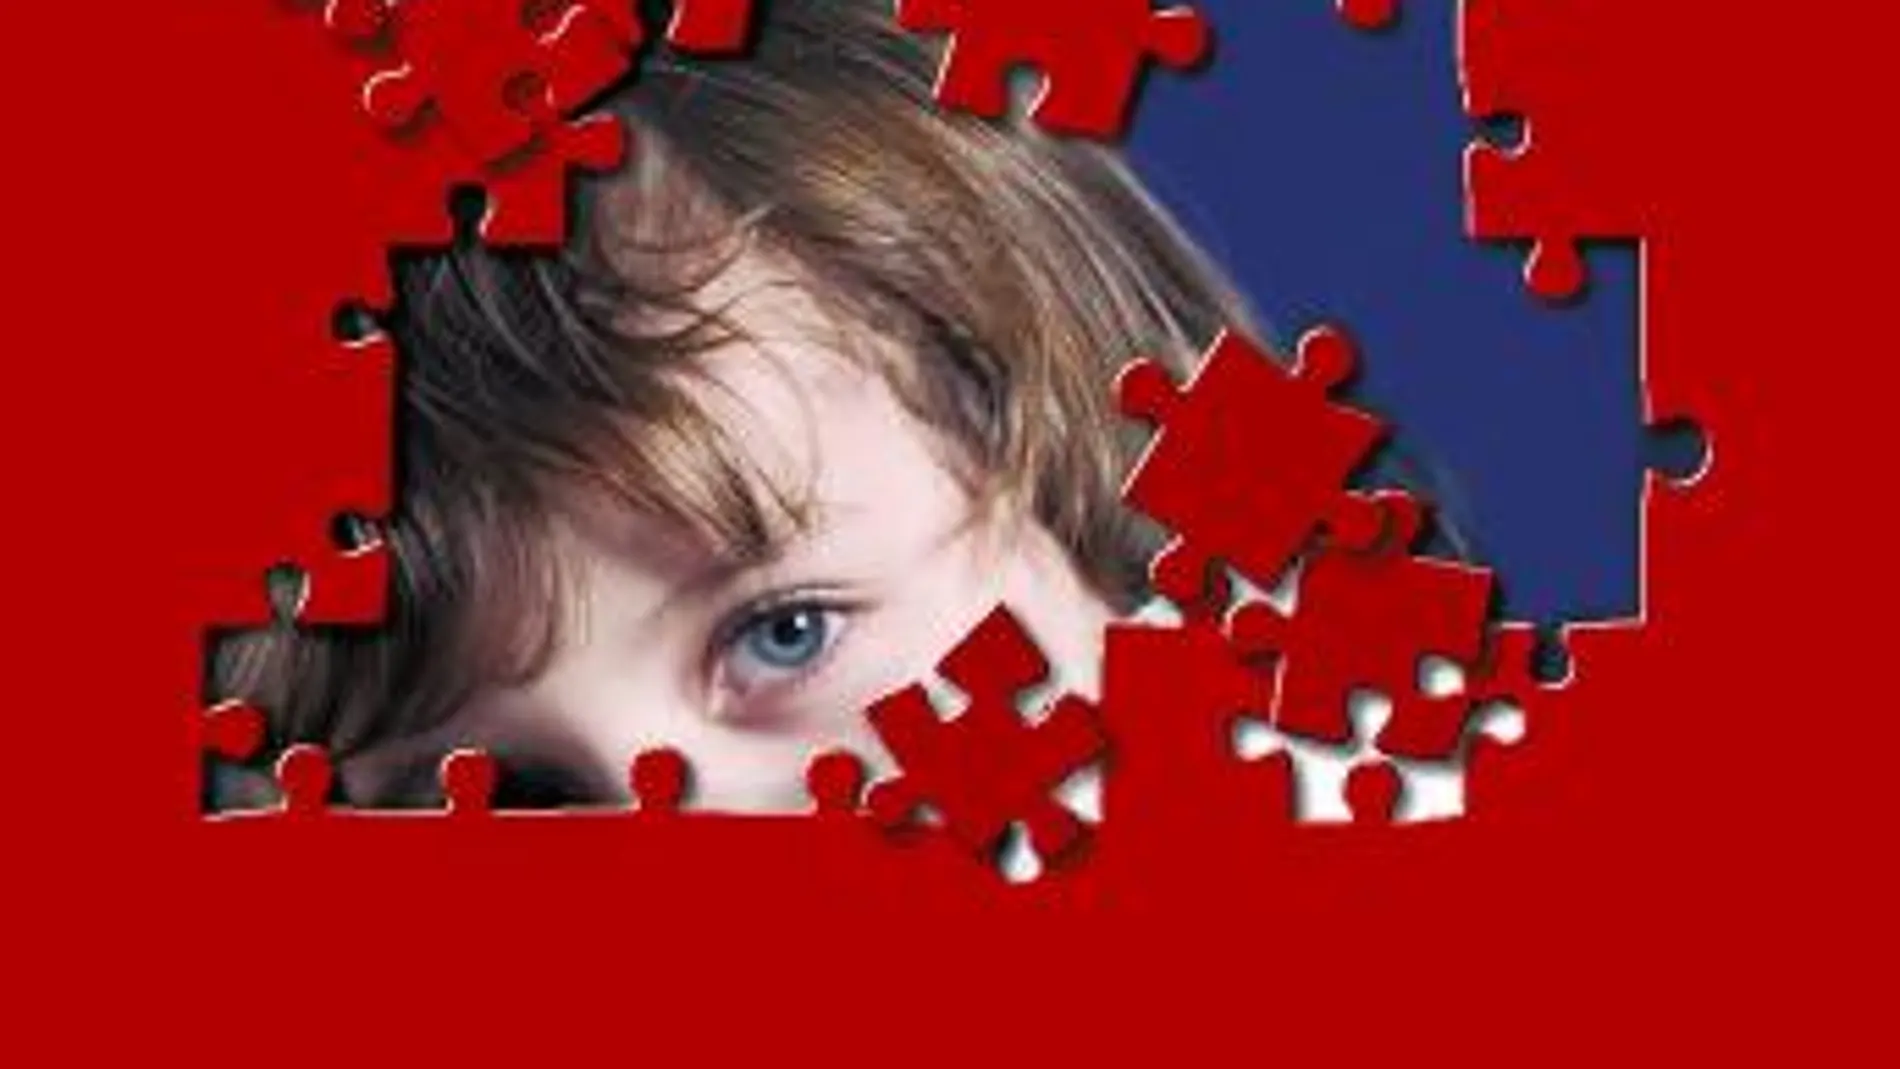 Investigadores del CSIC han visto que la falta de algunos genes en el clúster BEX/TCEAL podría relacionarse con ciertas alteraciones asociadas al trastorno del espectro autista